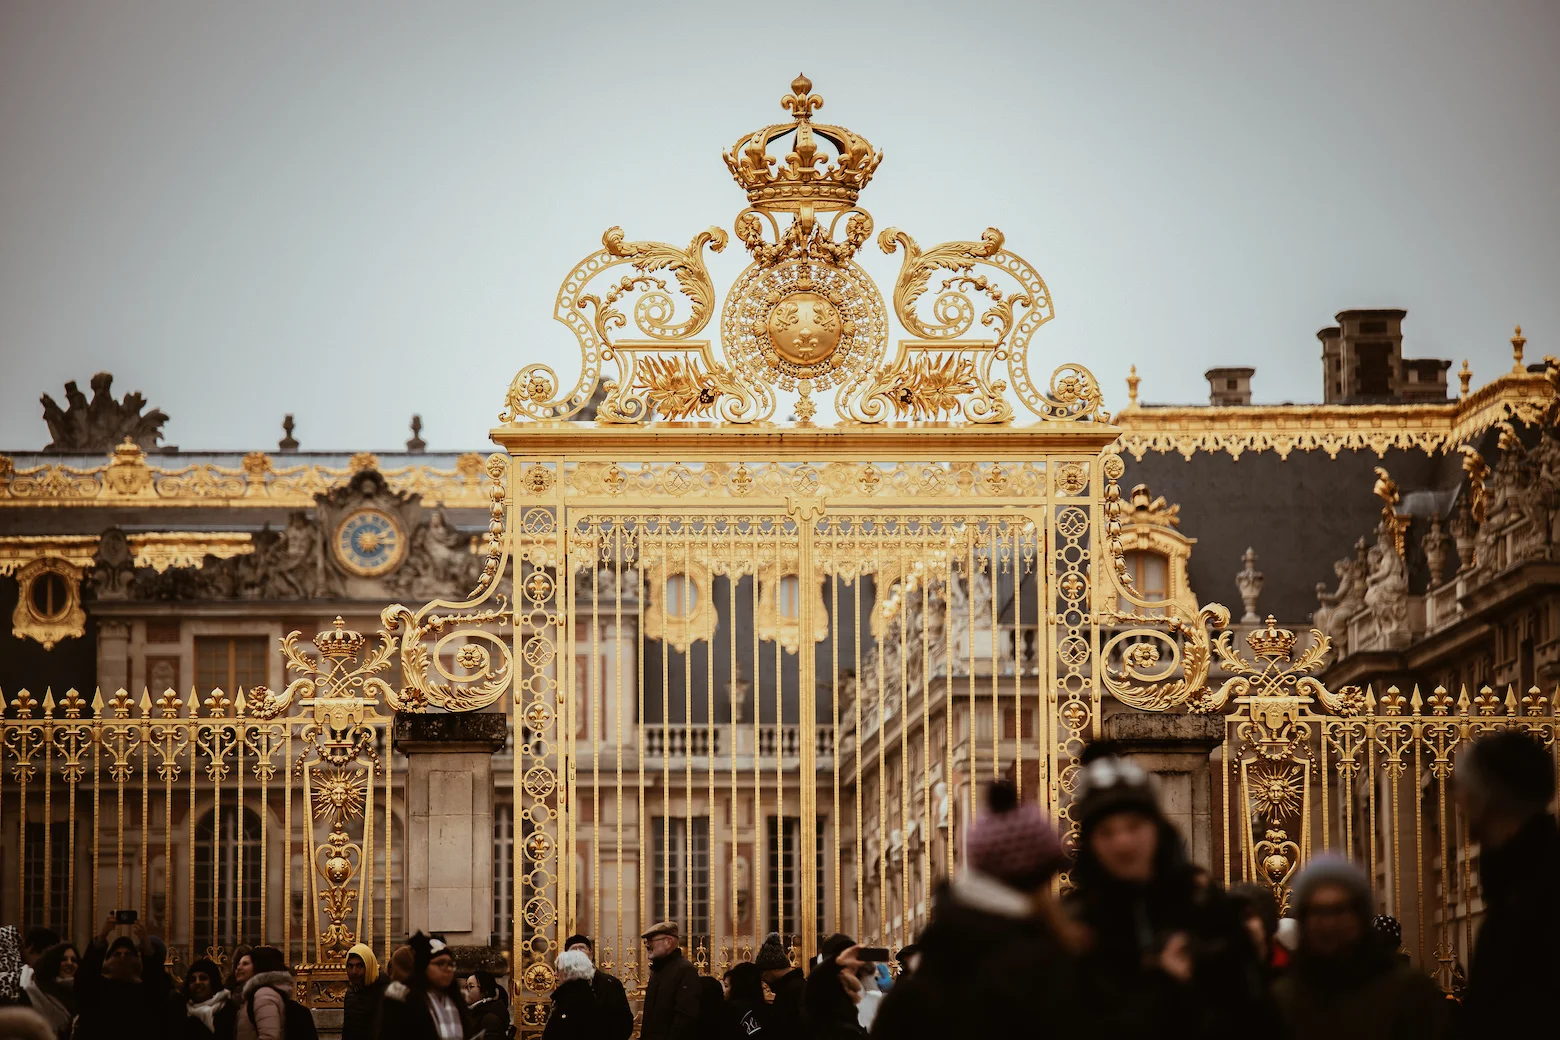 Venez contempler les merveilles du château de Versailles